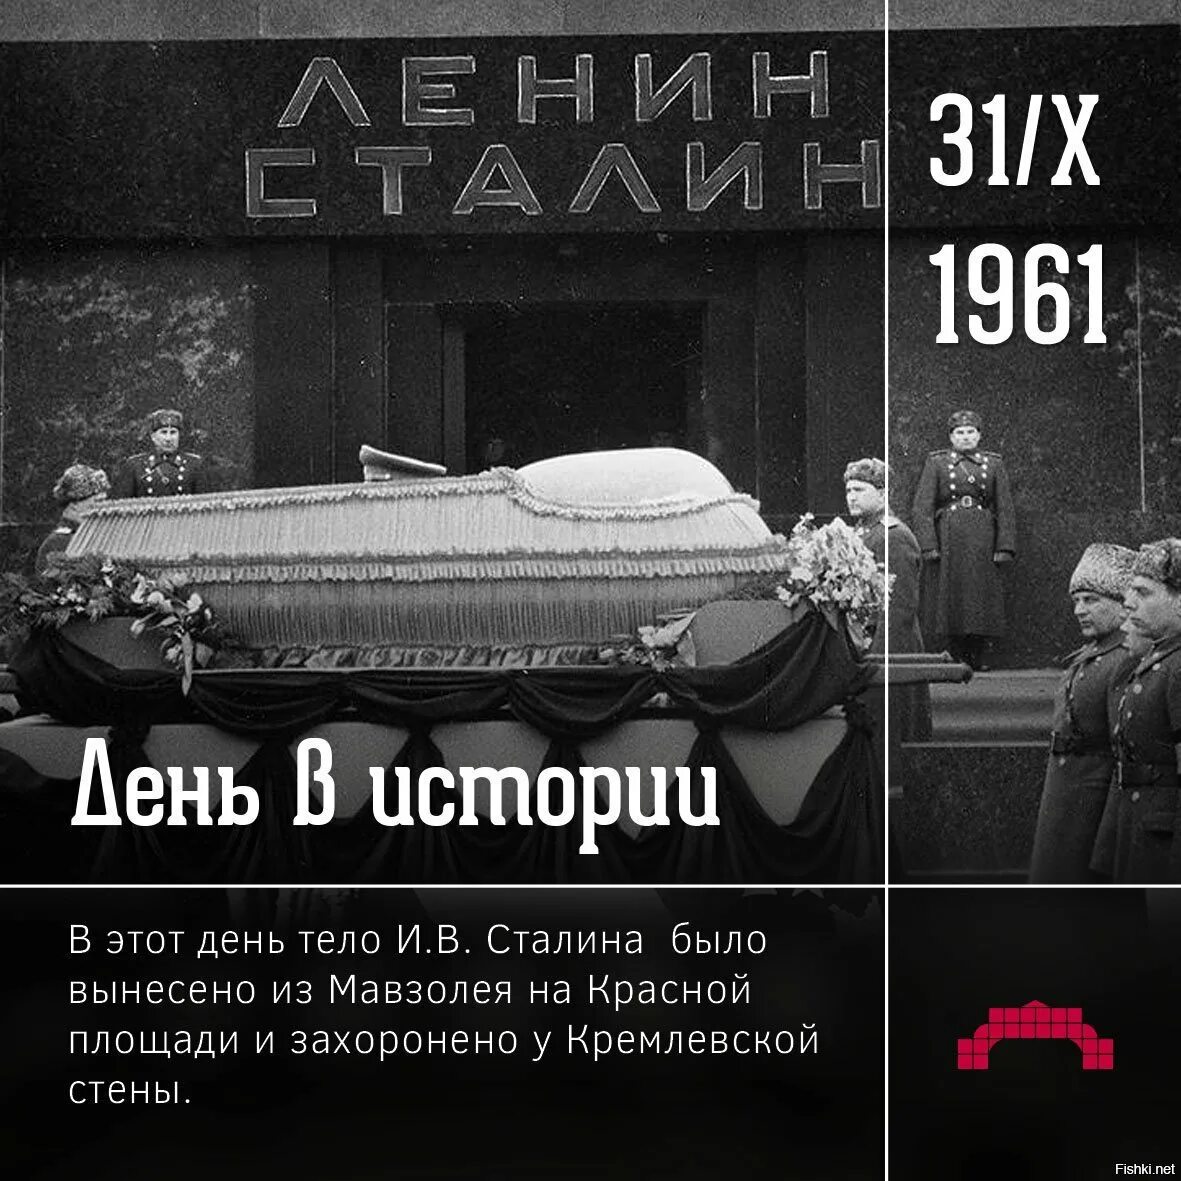 Вынос тела Ленина из мавзолея в 1961. Вынос Сталина из мавзолея 1961. Вынос тела Сталина из мавзолея.